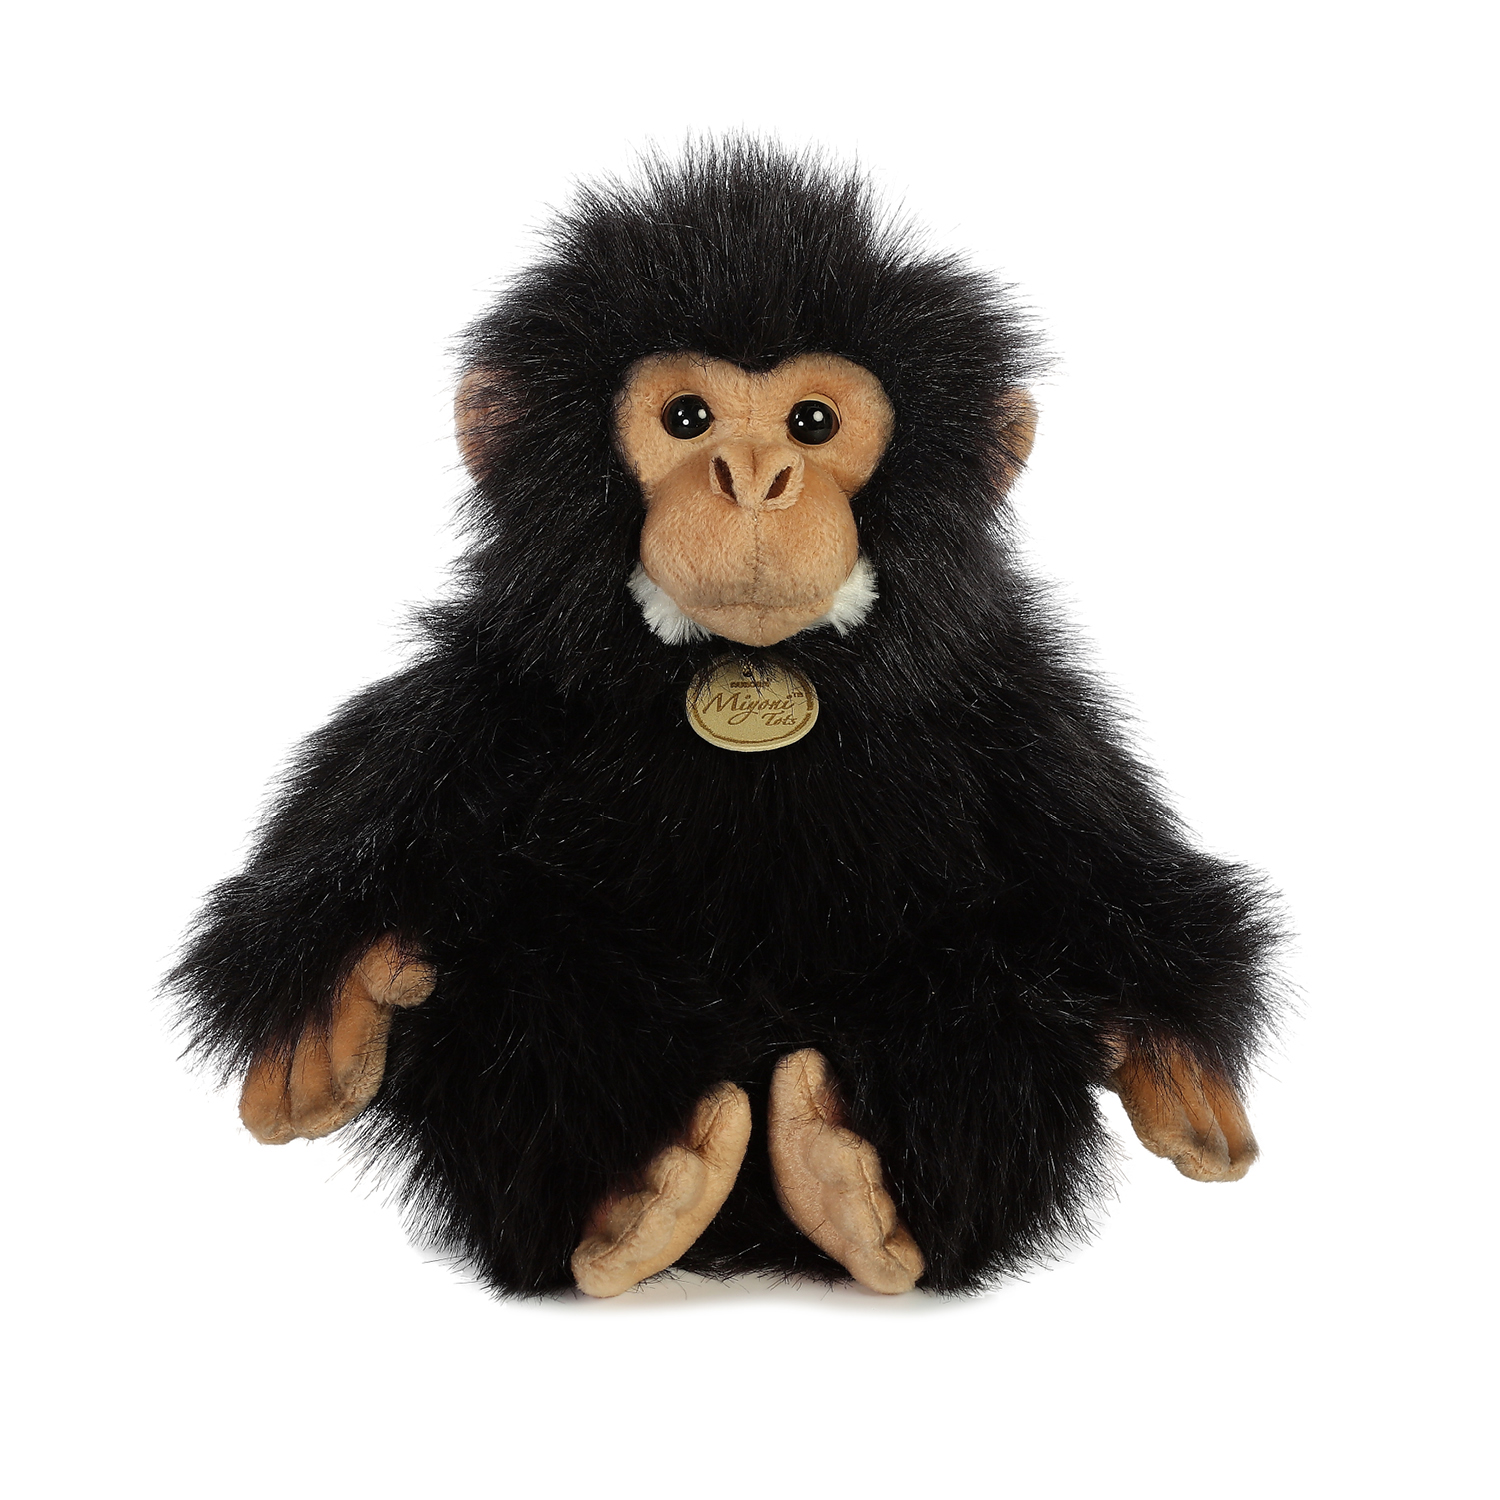 PBS KIDS Chimpanzee 11"